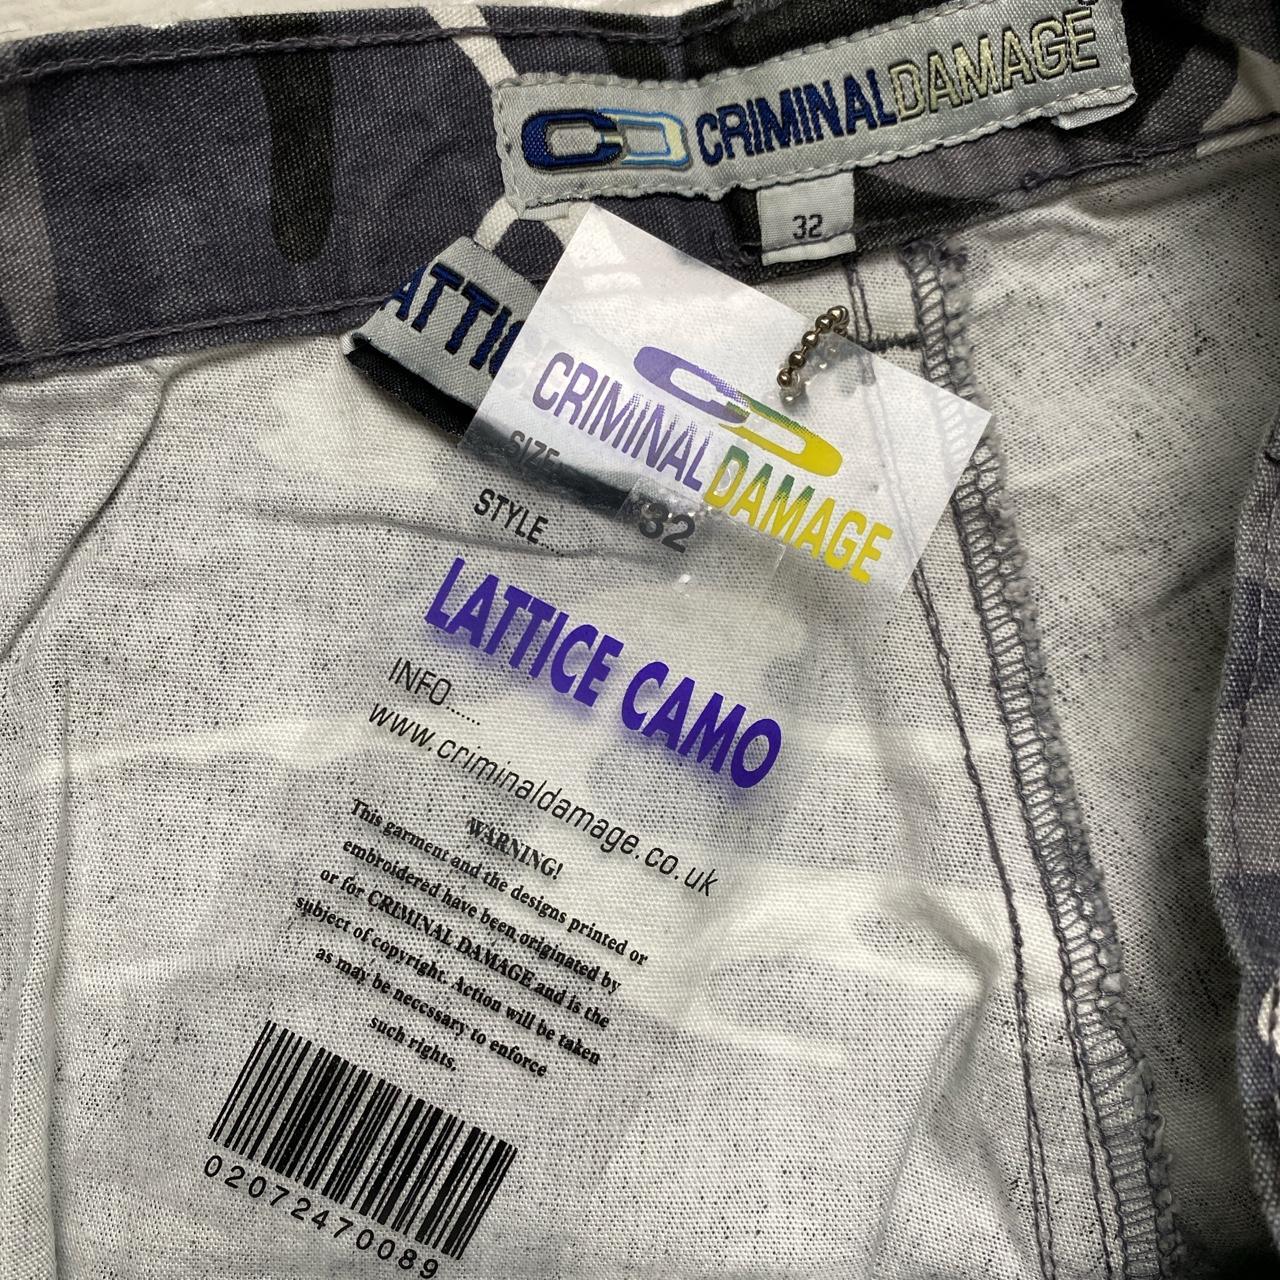 Criminal Damage White and Grey Camouflage Baggy Cargo Combat Bondage Trousers